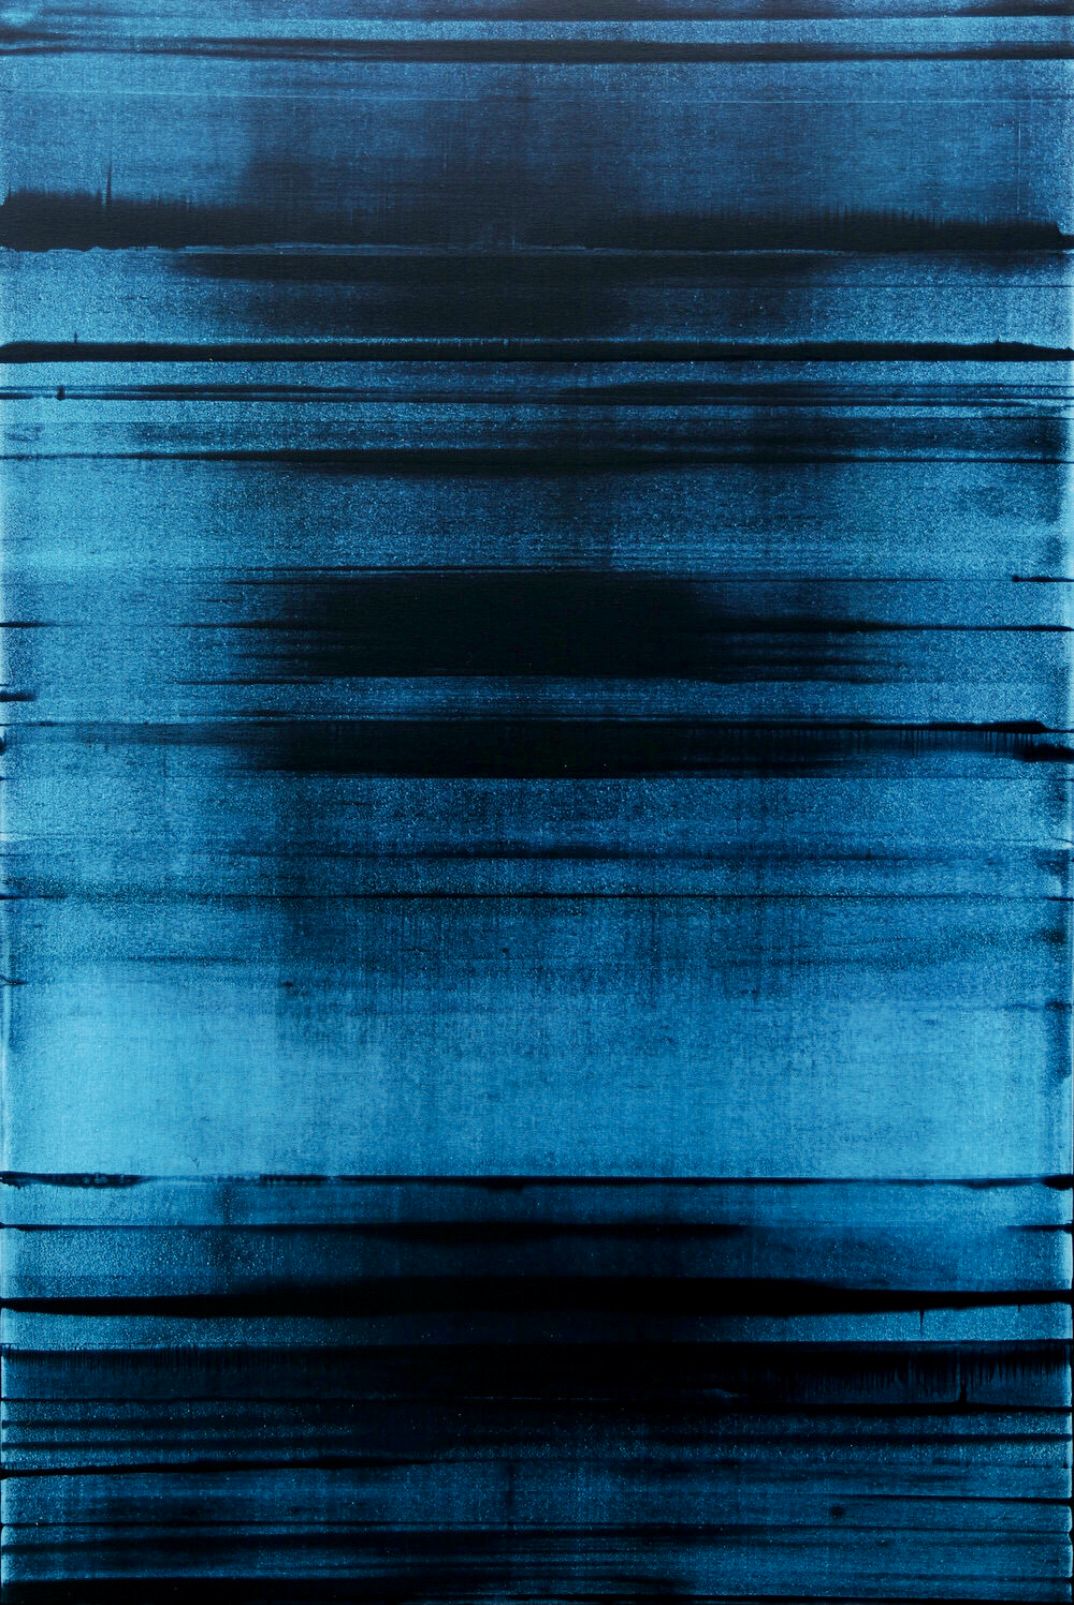 Dans la peinture abstraite "BLUE FREQUENCY" d'Inez Froehlich, les couleurs dominent, le bleu, l'abstraction monochrome. Le style de la peinture est shabby chic, style industriel, vintage, rétro, boho, rustique.